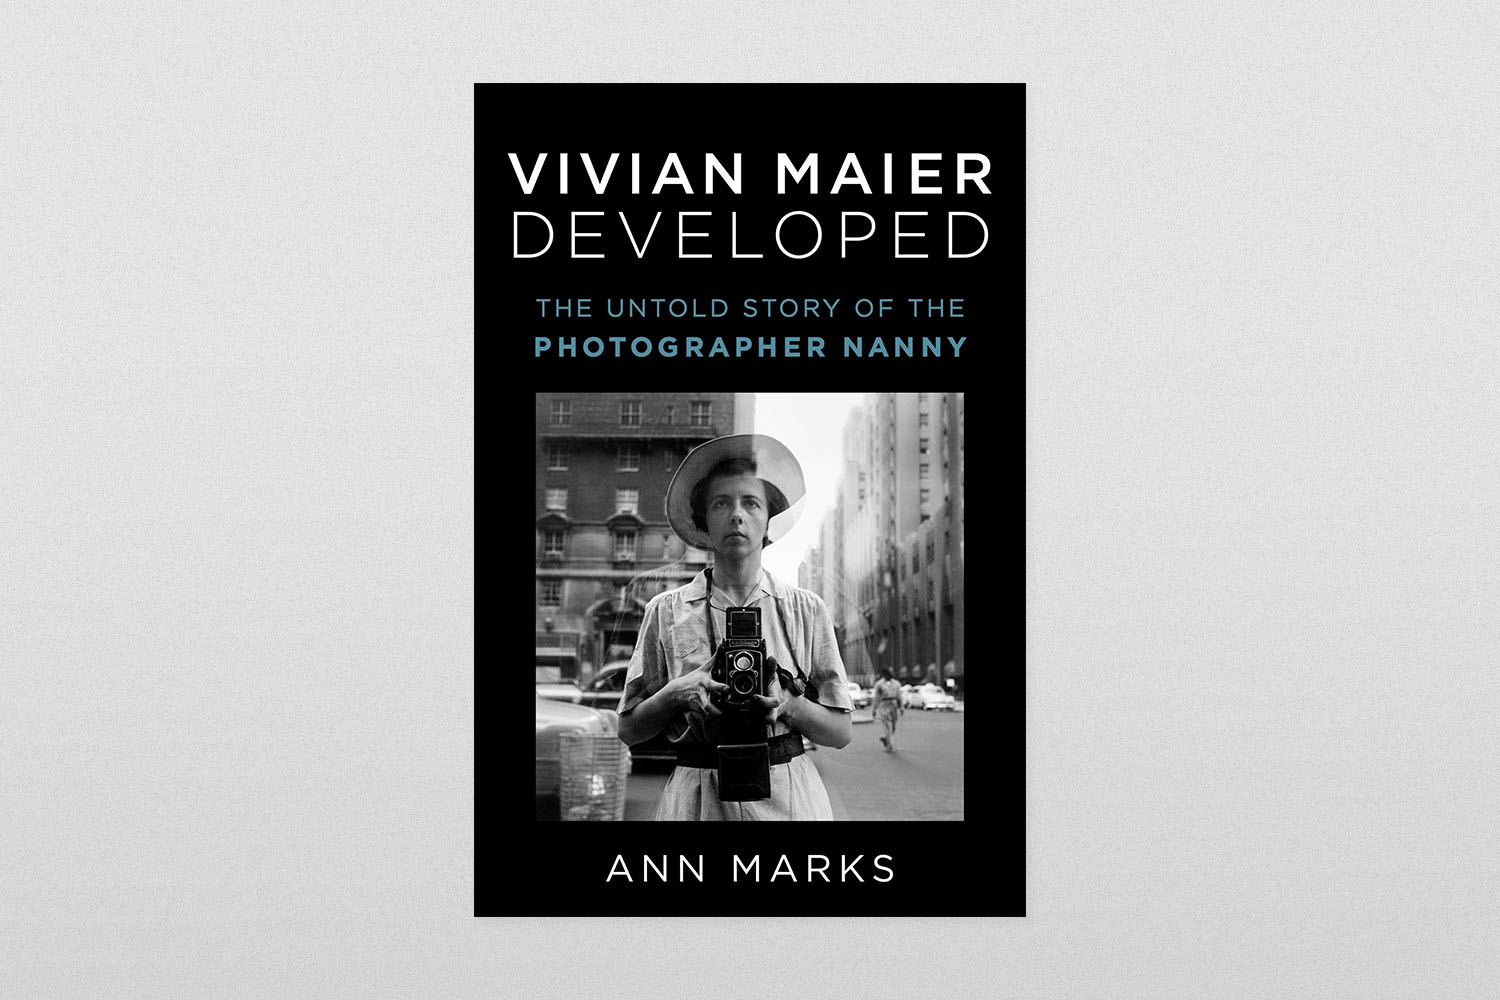 "Vivian Maier Developed"